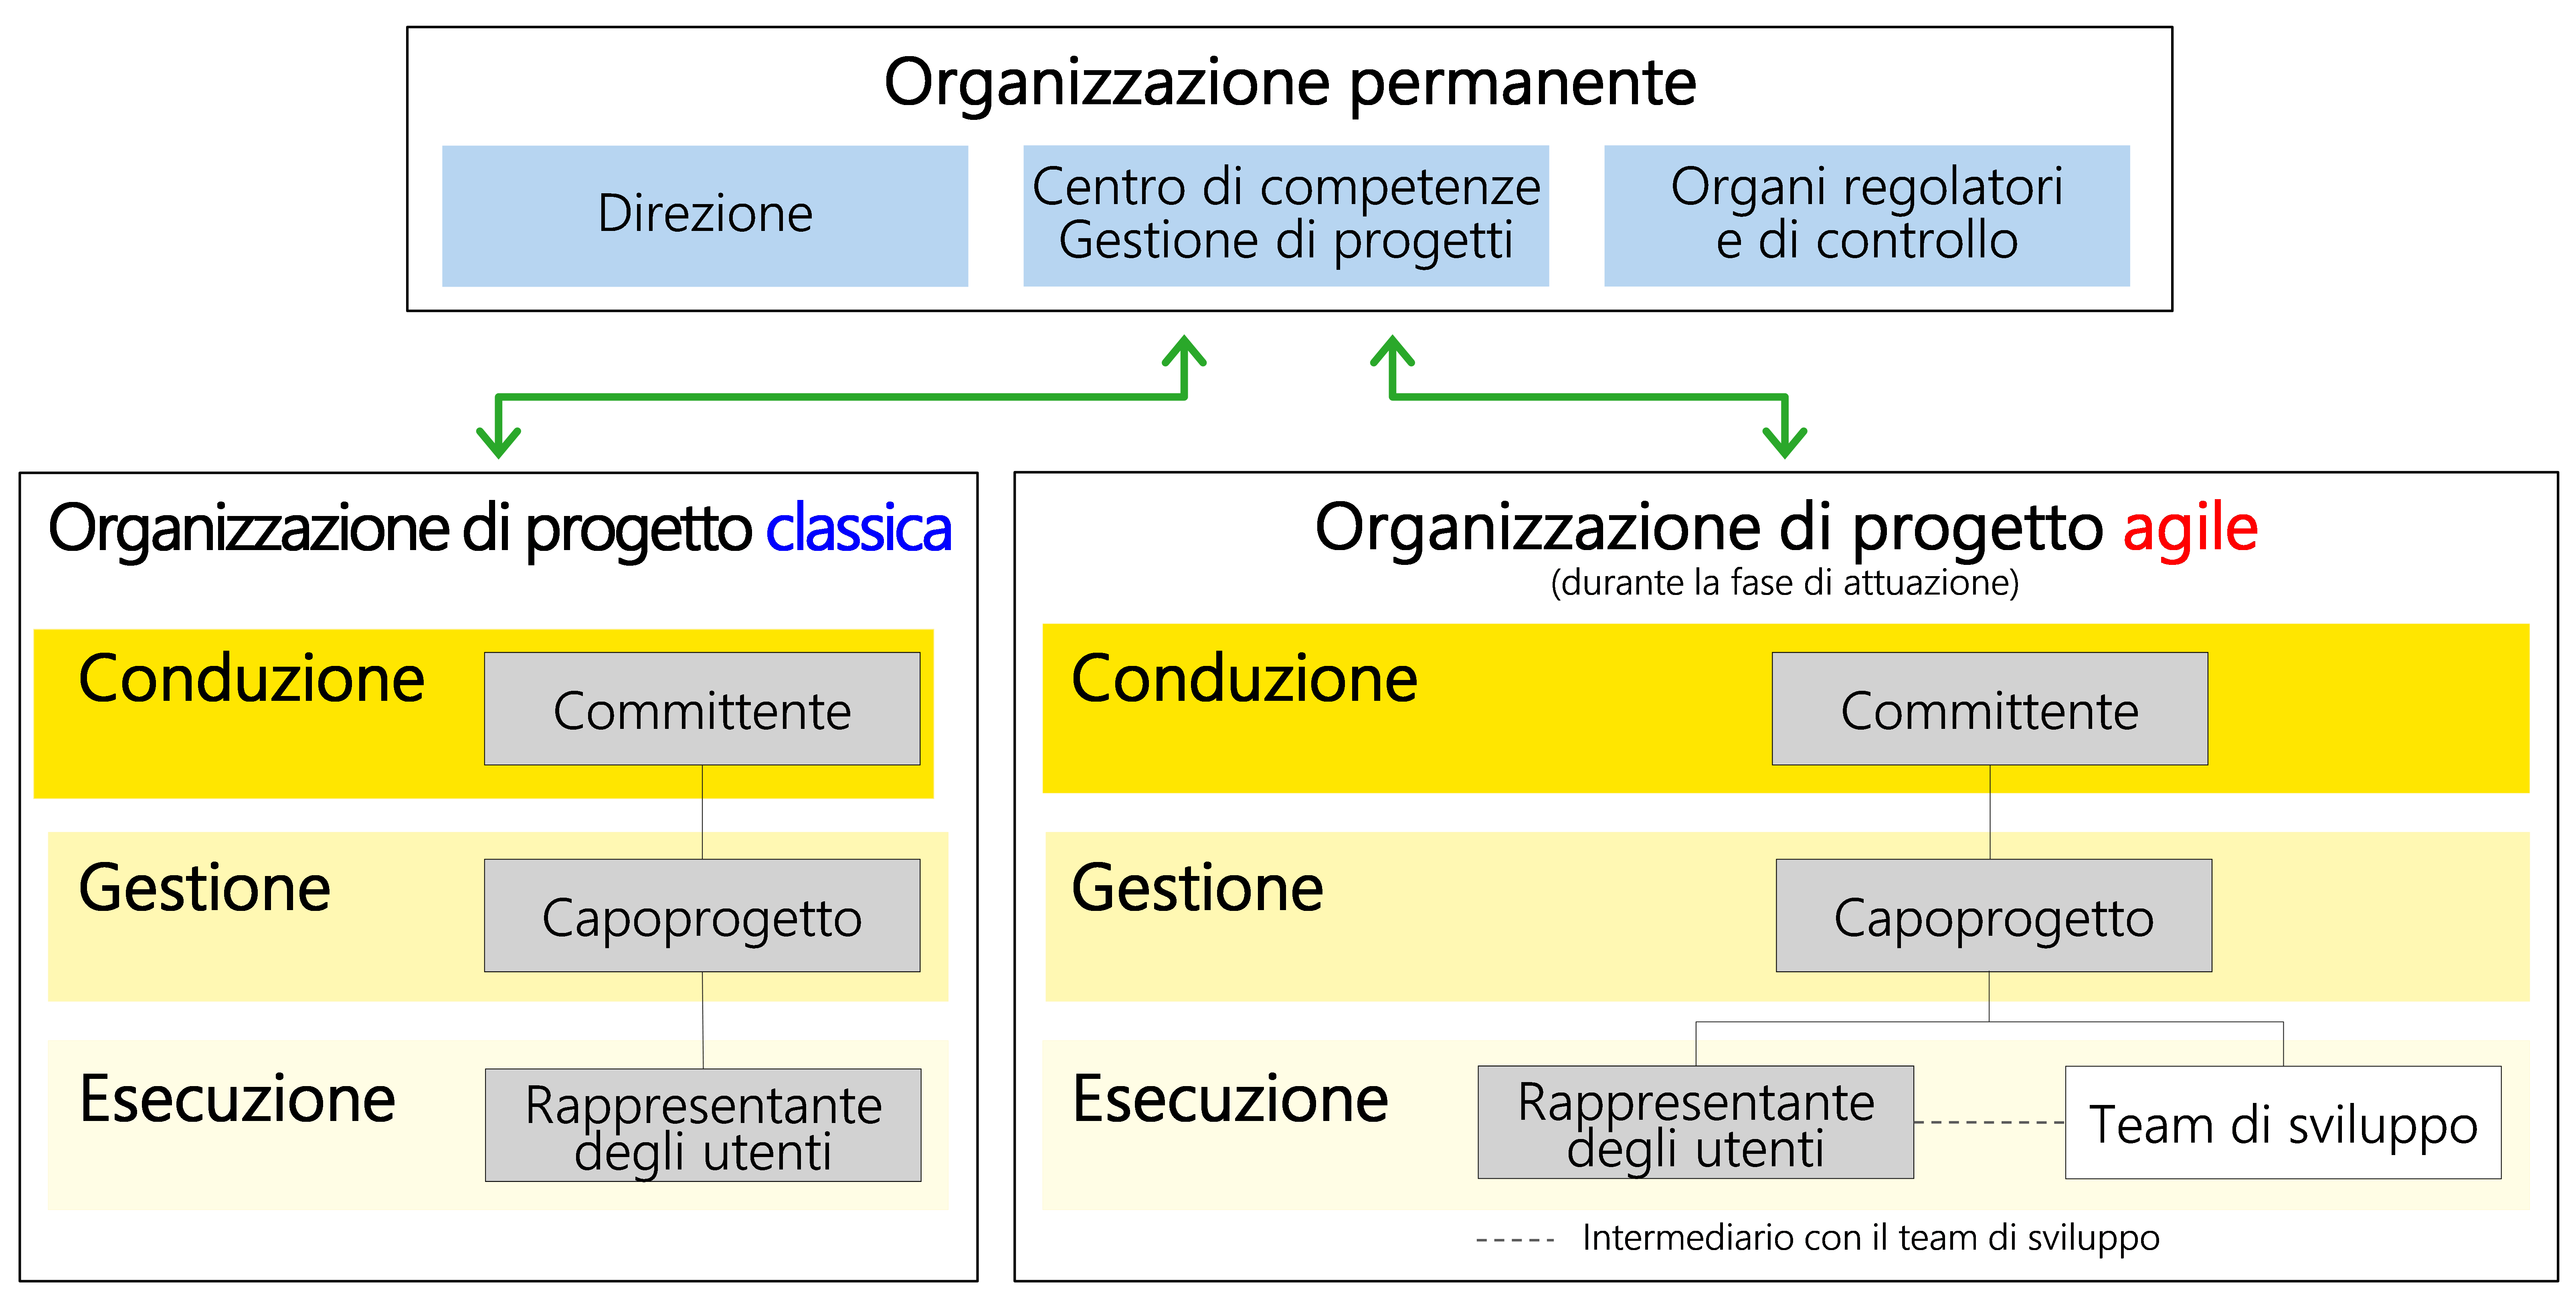 Figura 26: organizzazione permanente e organizzazione di progetto (con i ruoli minimi richiesti evidenziati in grigio)